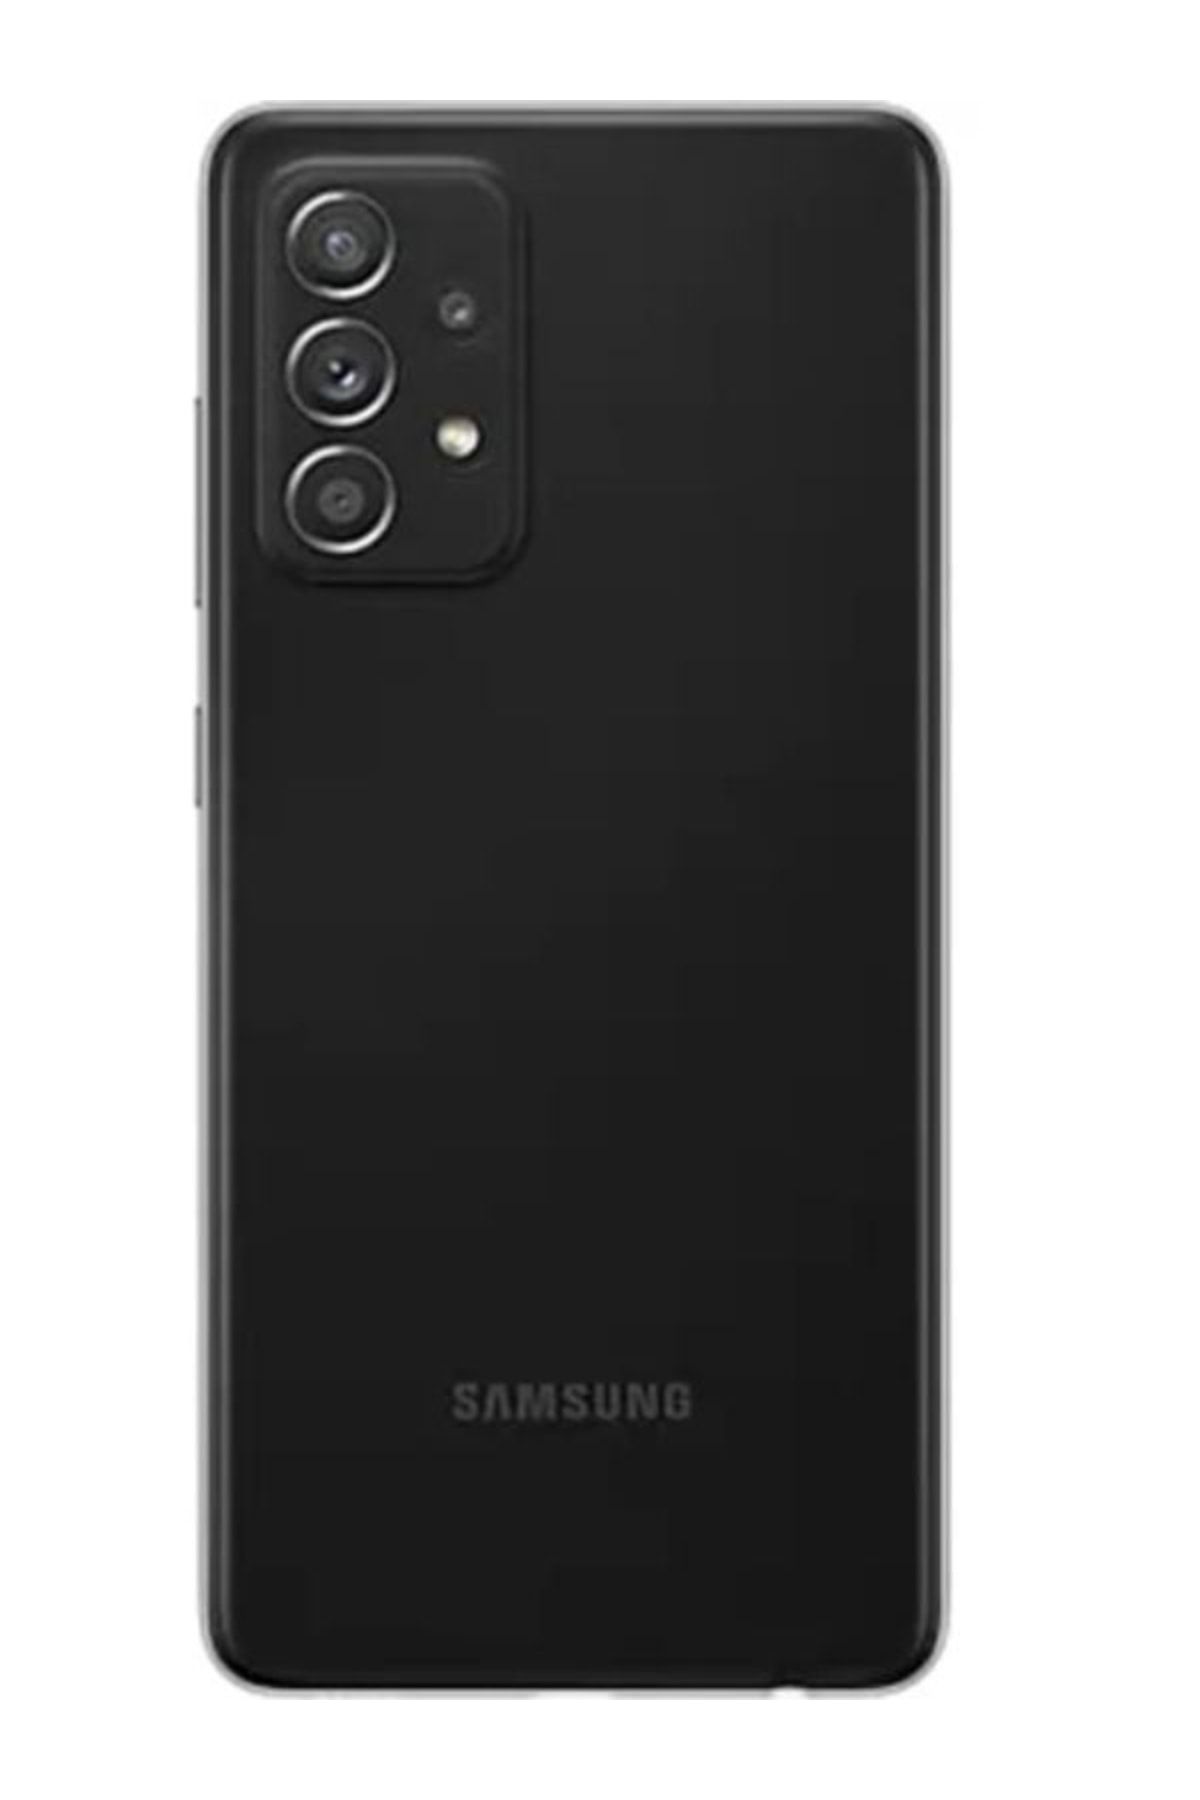 Samsung Yenilenmiş Galaxy A52 Black 128 GB 12 Ay Garantili